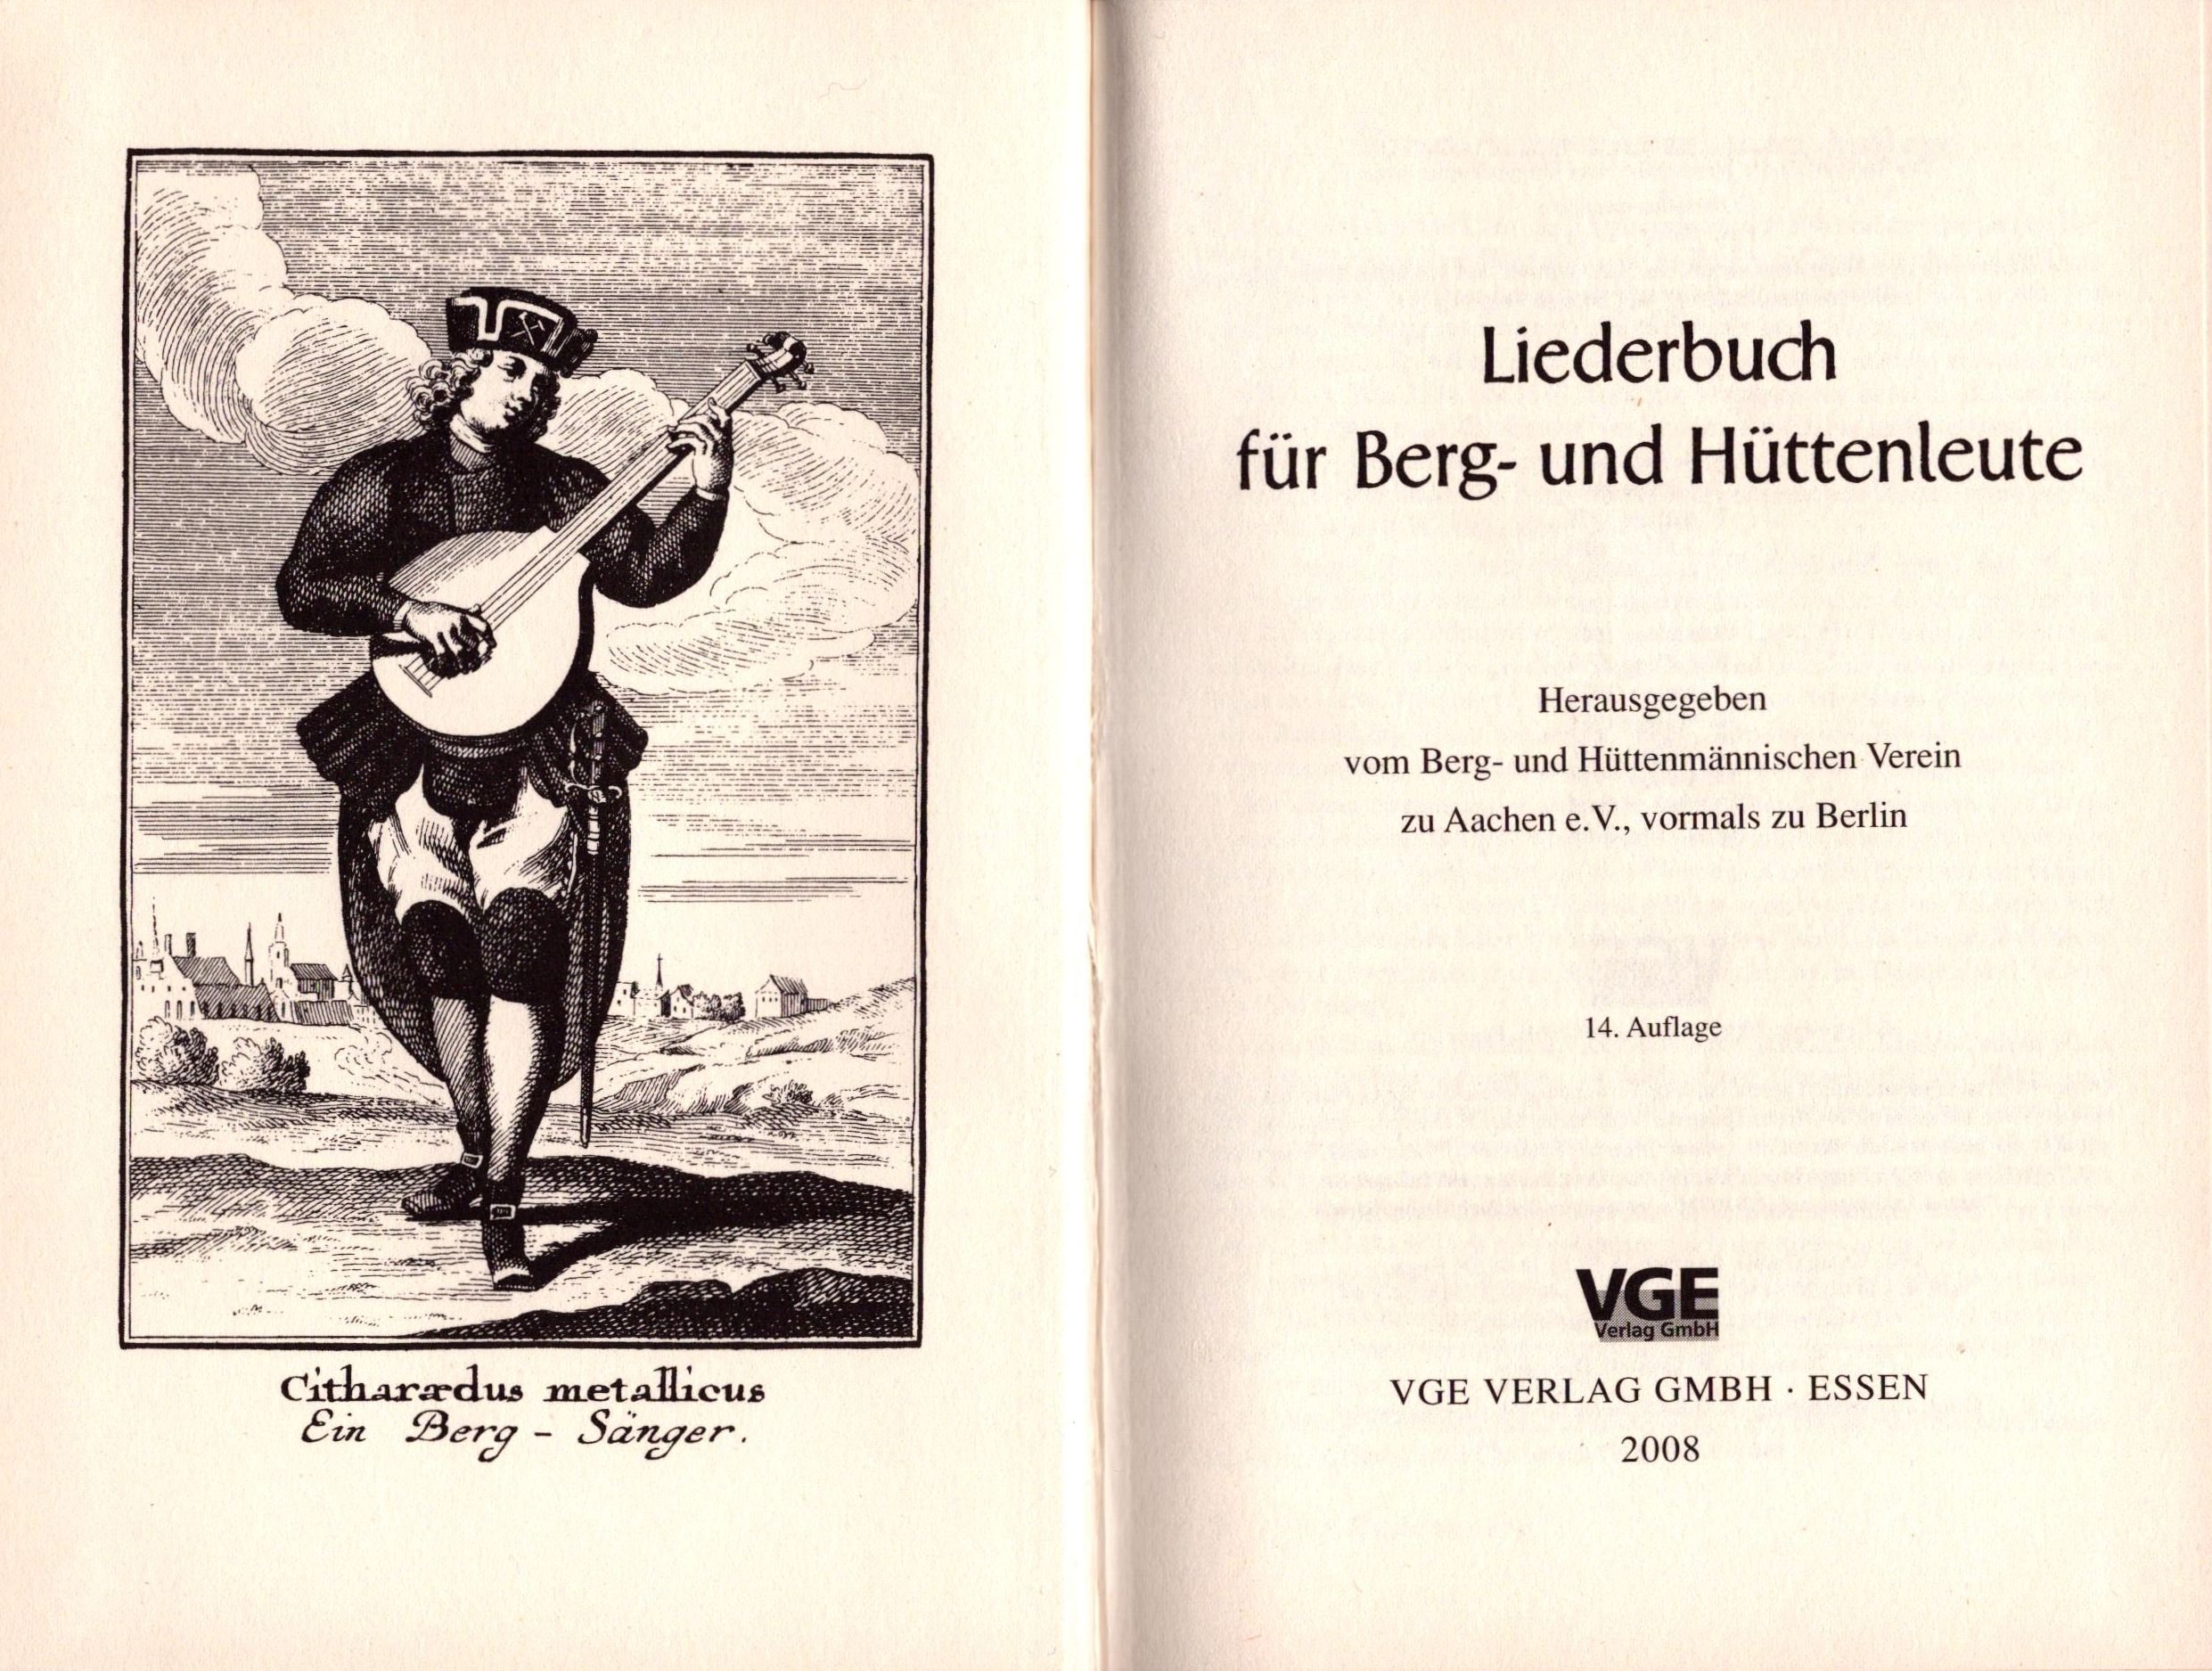 Liederbuch für Berg- und Hüttenleute (Archiv SAXONIA-FREIBERG-STIFTUNG CC BY-NC-SA)